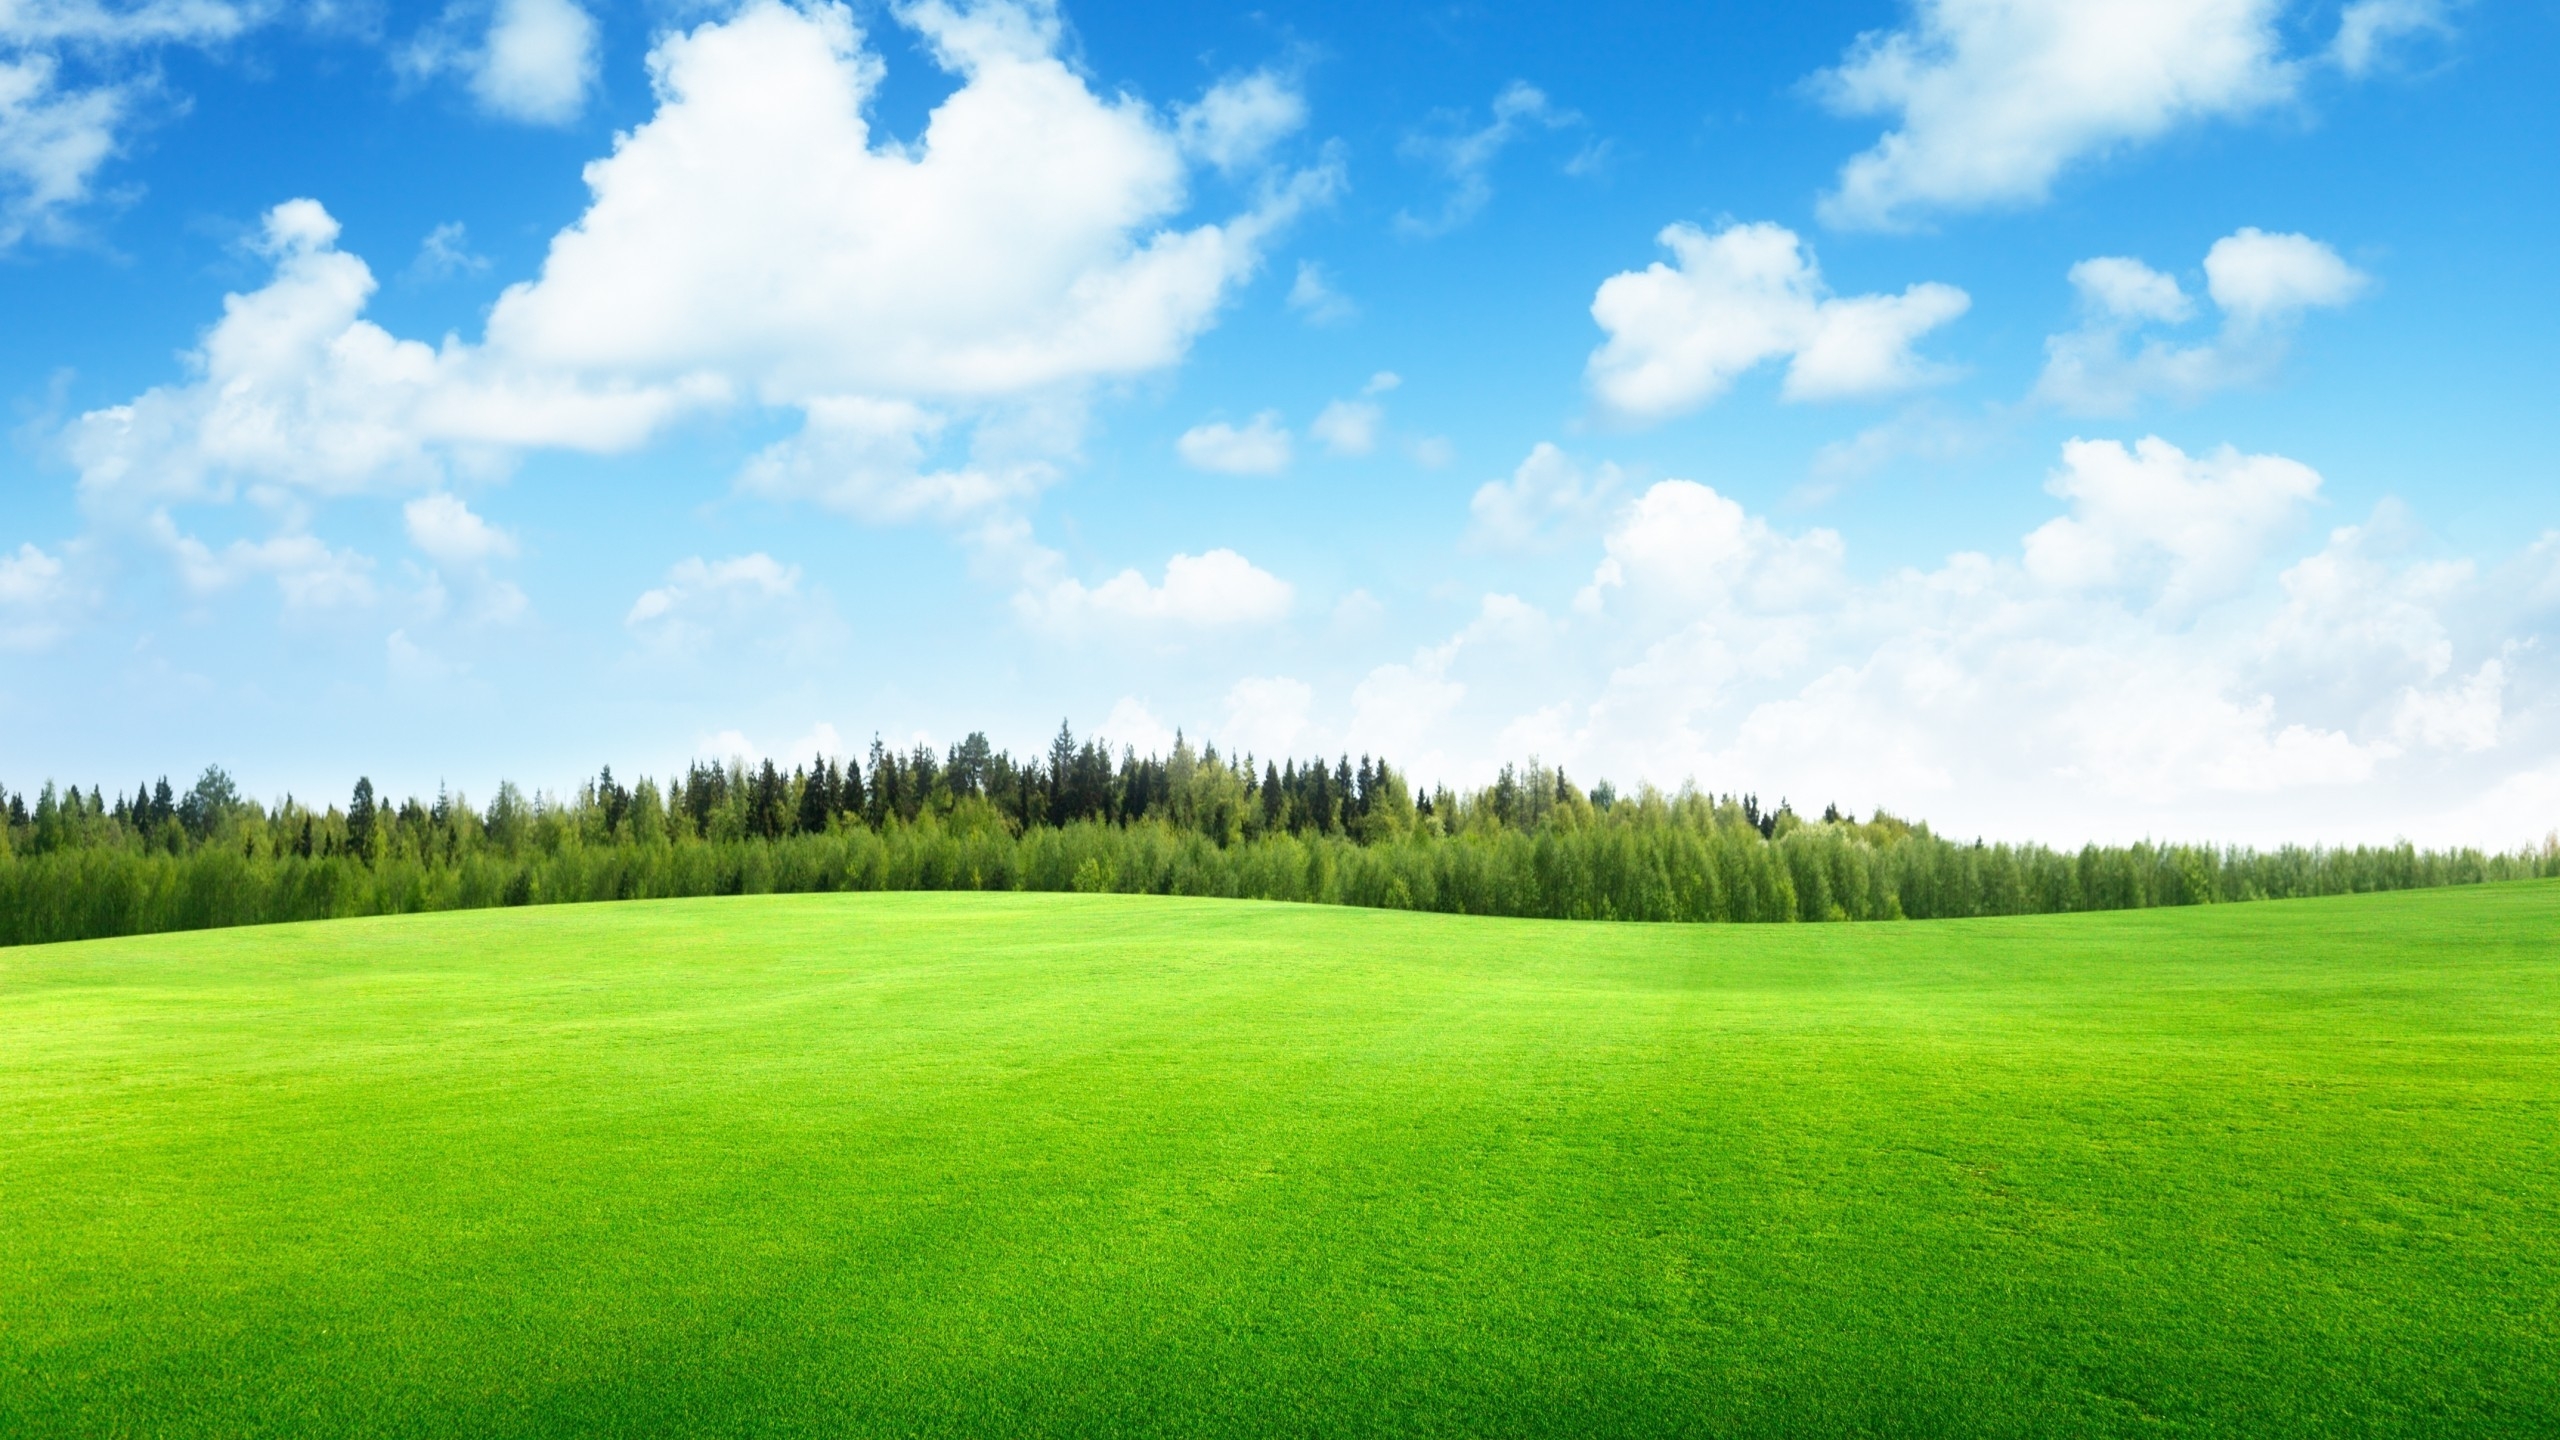 Beaufitul Green Grass Field for 2560x1440 HDTV resolution